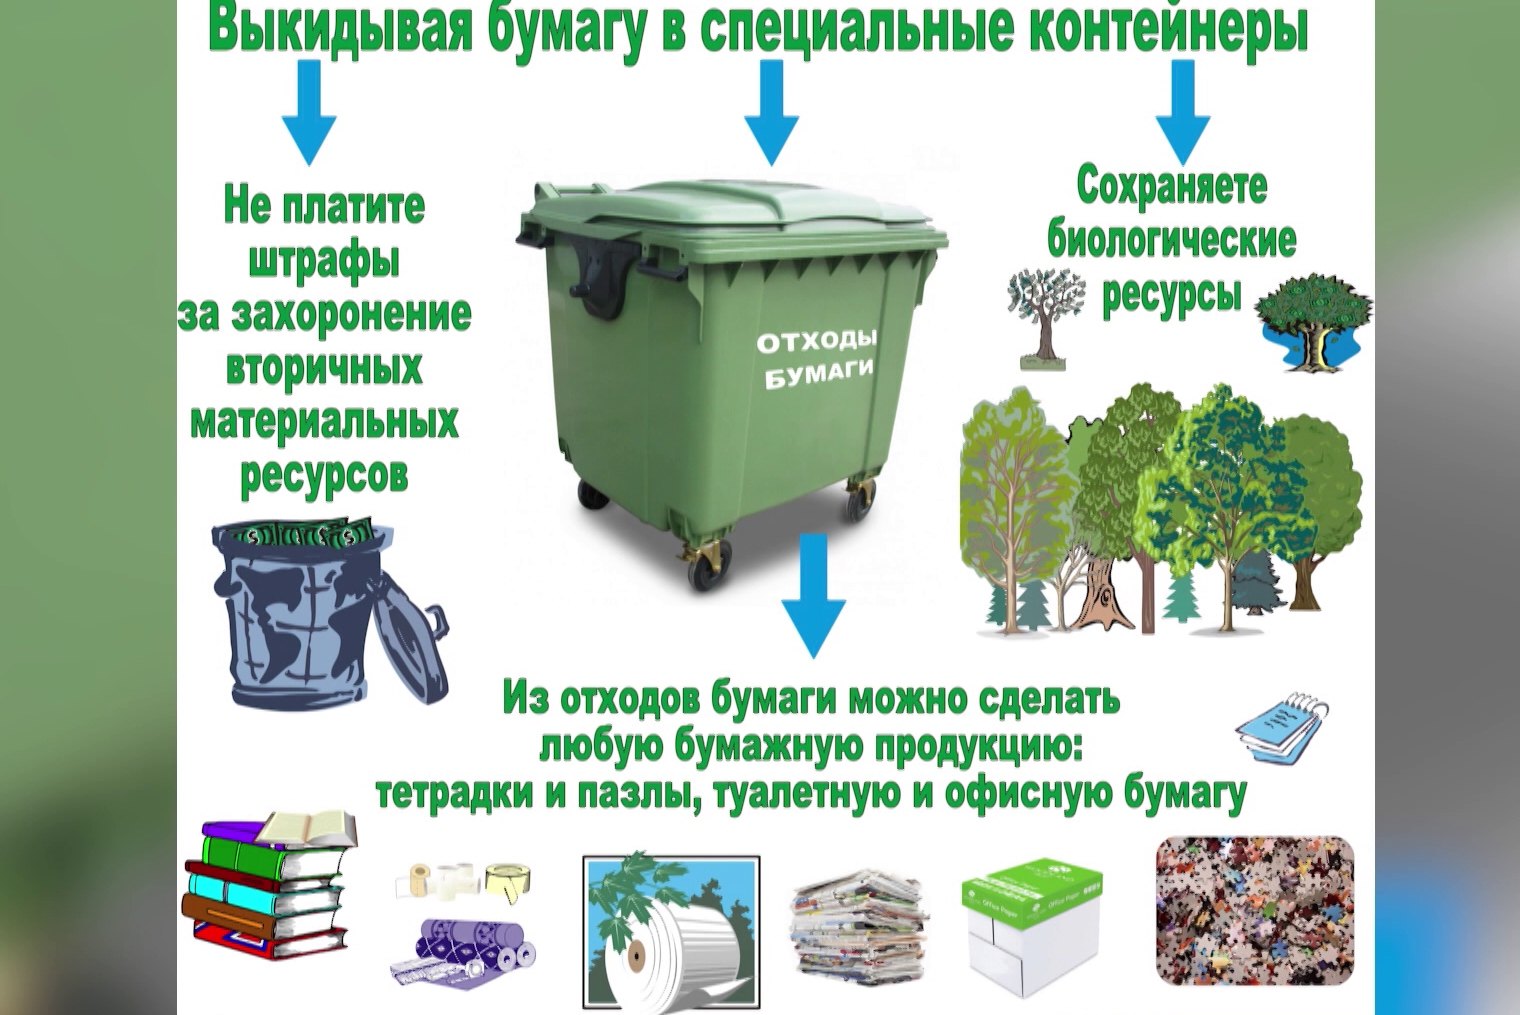 Правила сортировки тбо в домашних условиях при раздельном сборе мусора